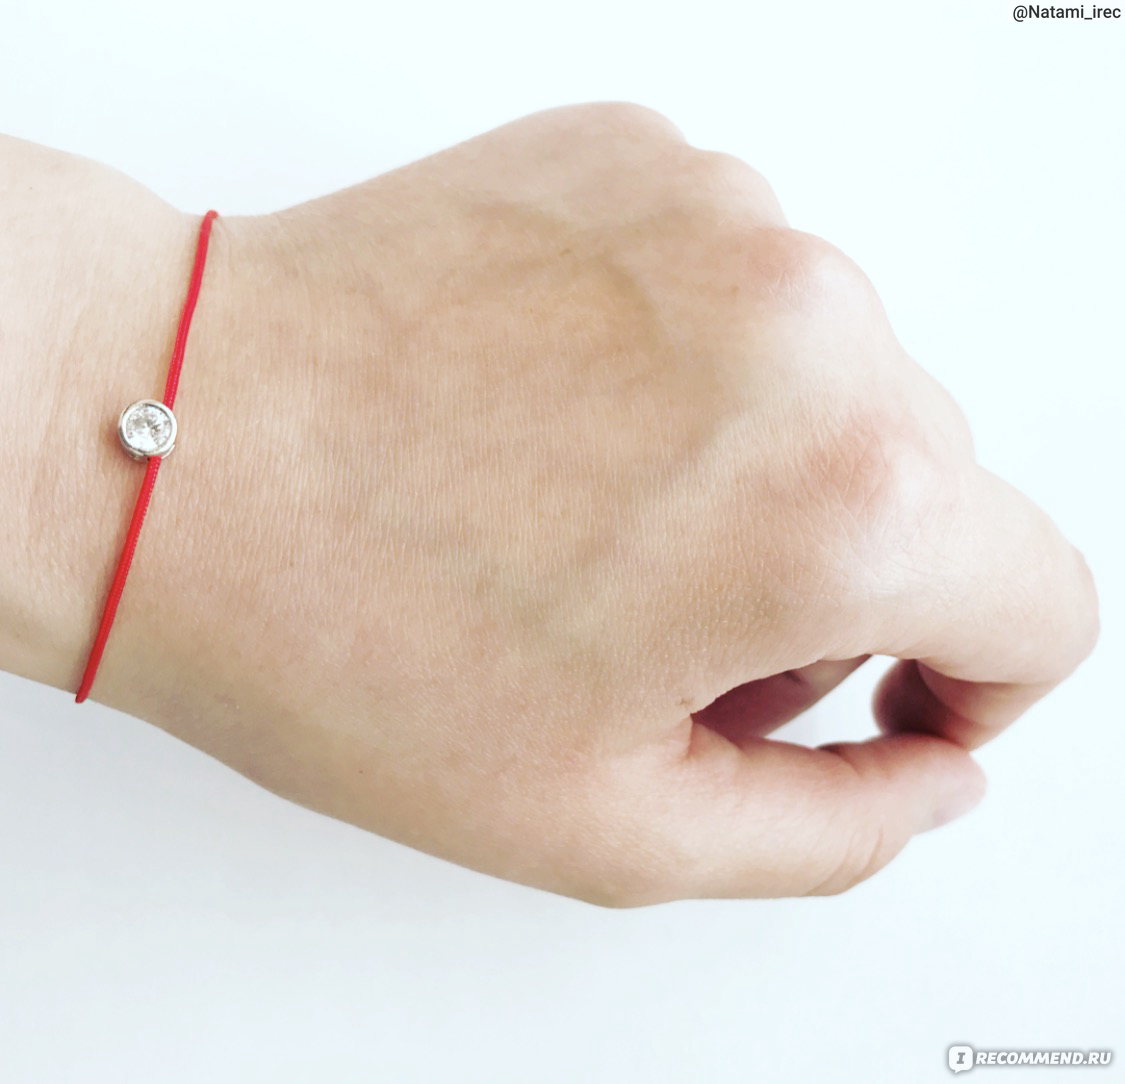 Красная нить: на какой руке нужно носить для защиты